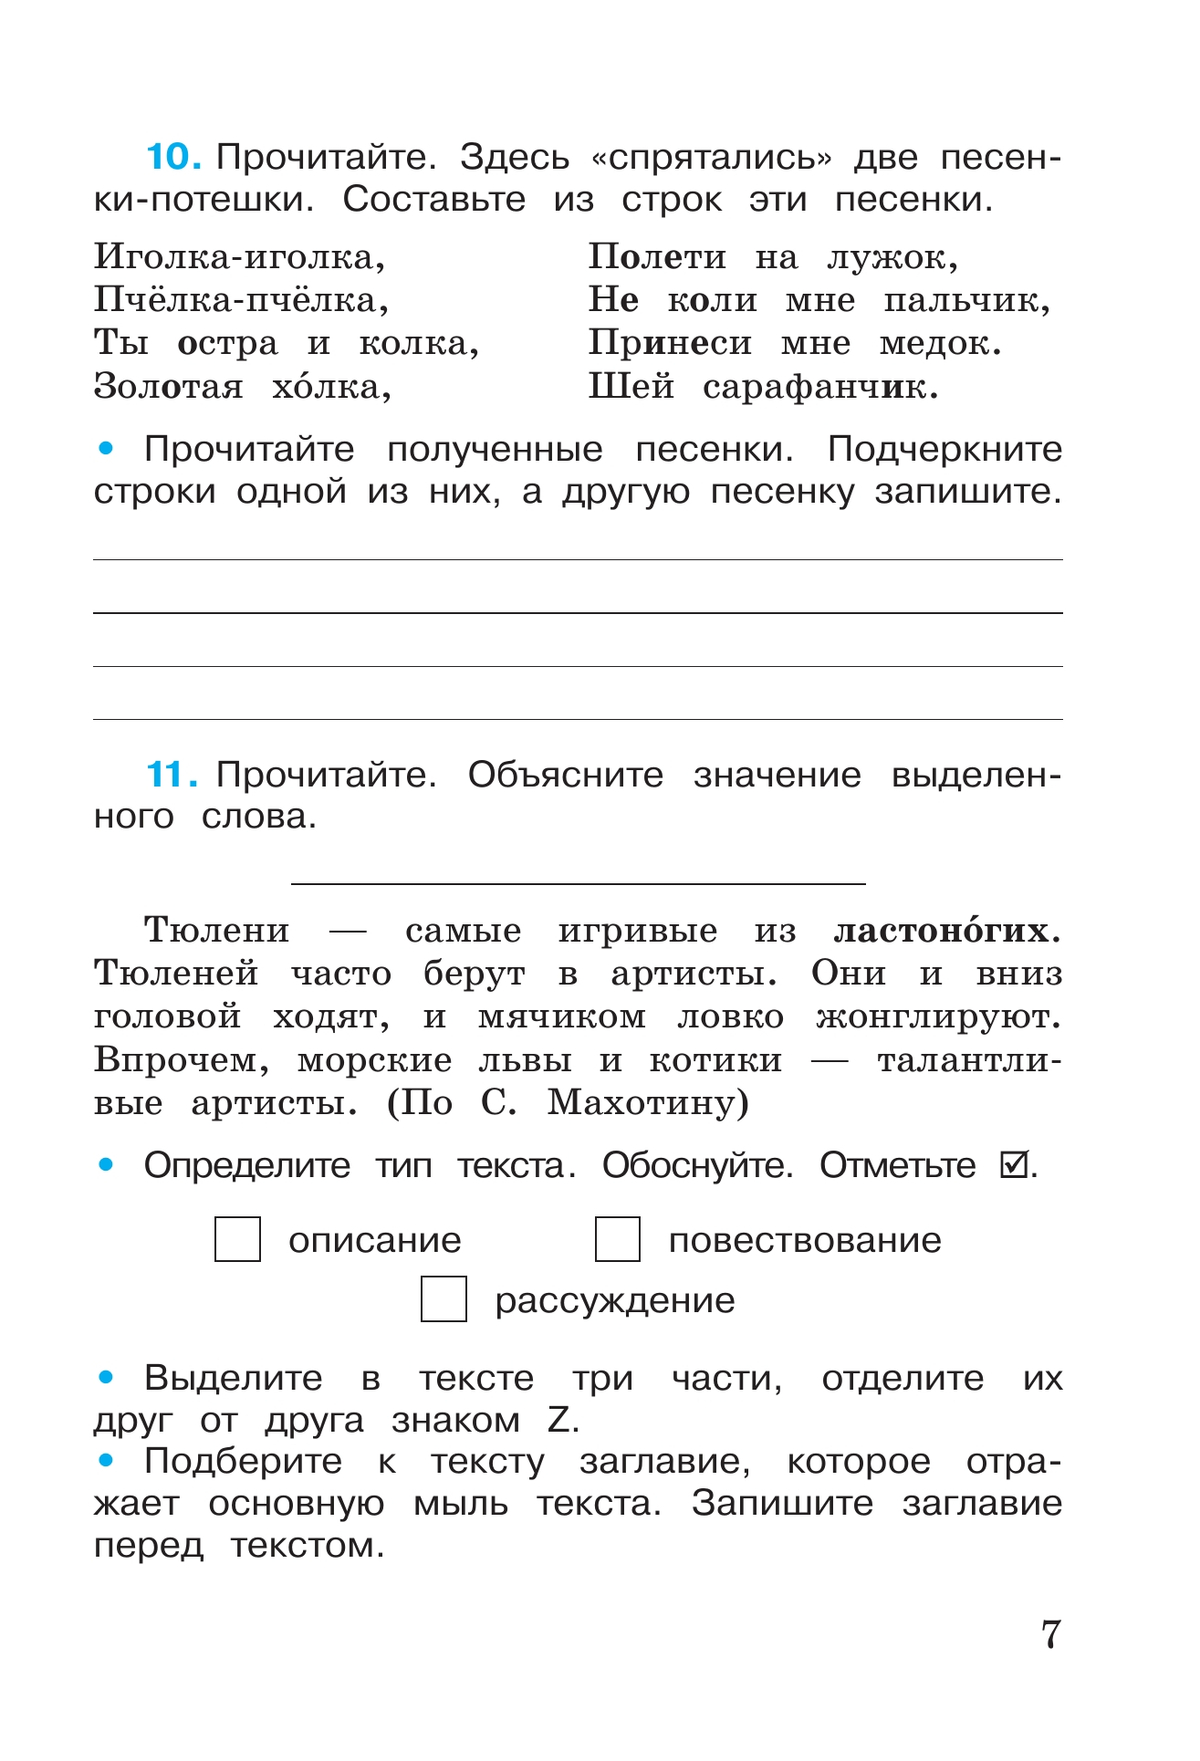 Русский язык. Рабочая тетрадь. 3 класс. В 2-х ч. Ч. 1 5